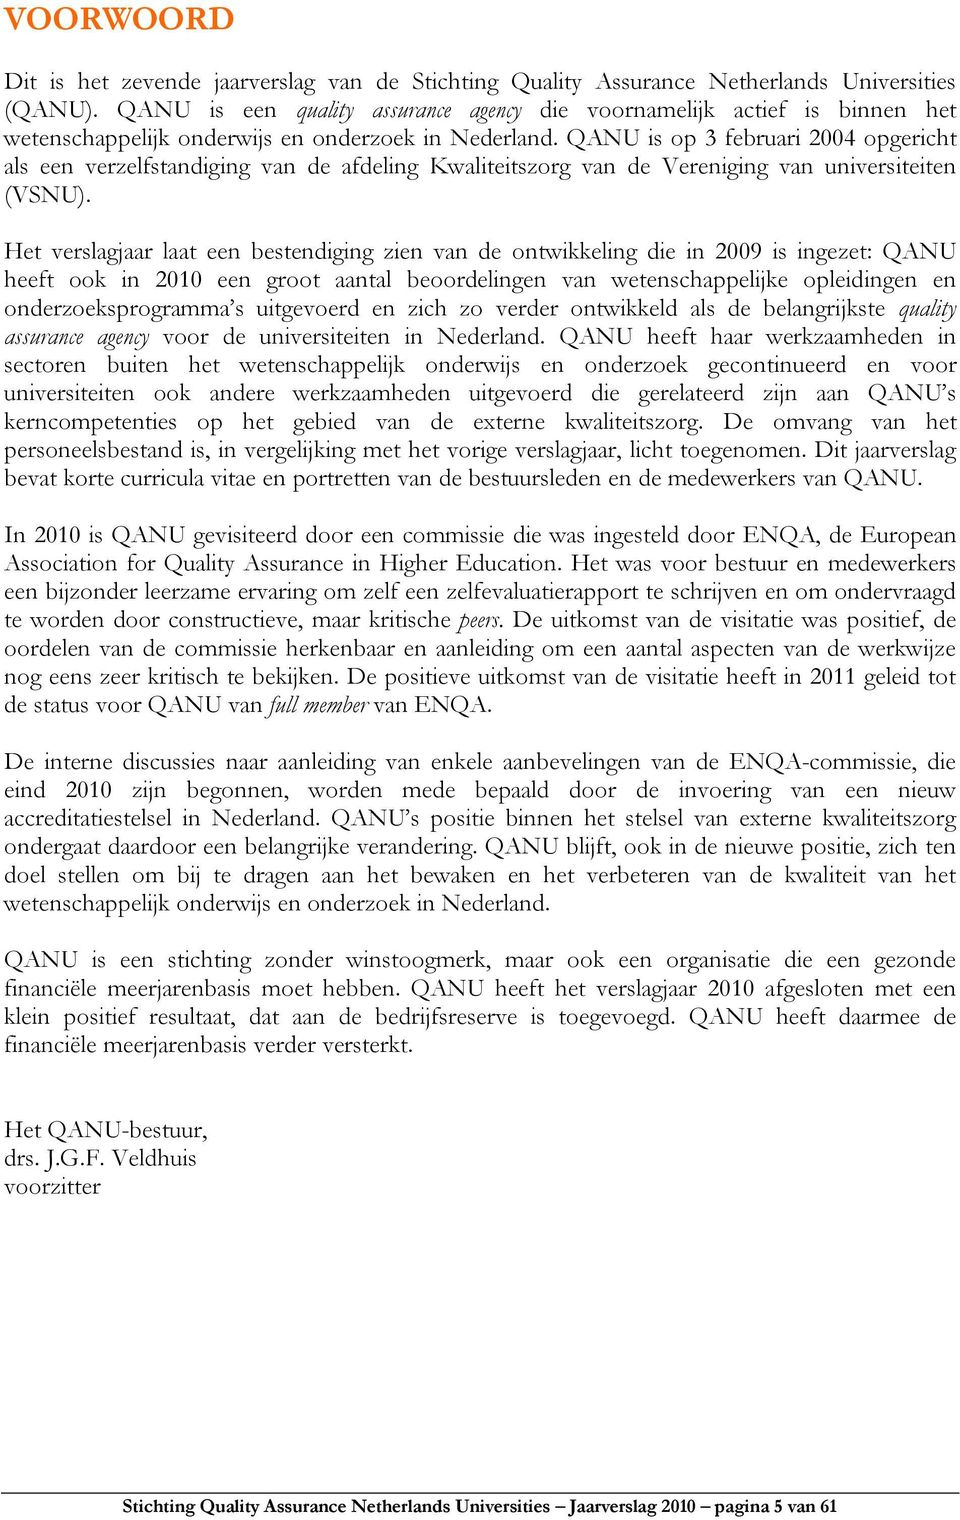 QANU is op 3 februari 2004 opgericht als een verzelfstandiging van de afdeling Kwaliteitszorg van de Vereniging van universiteiten (VSNU).